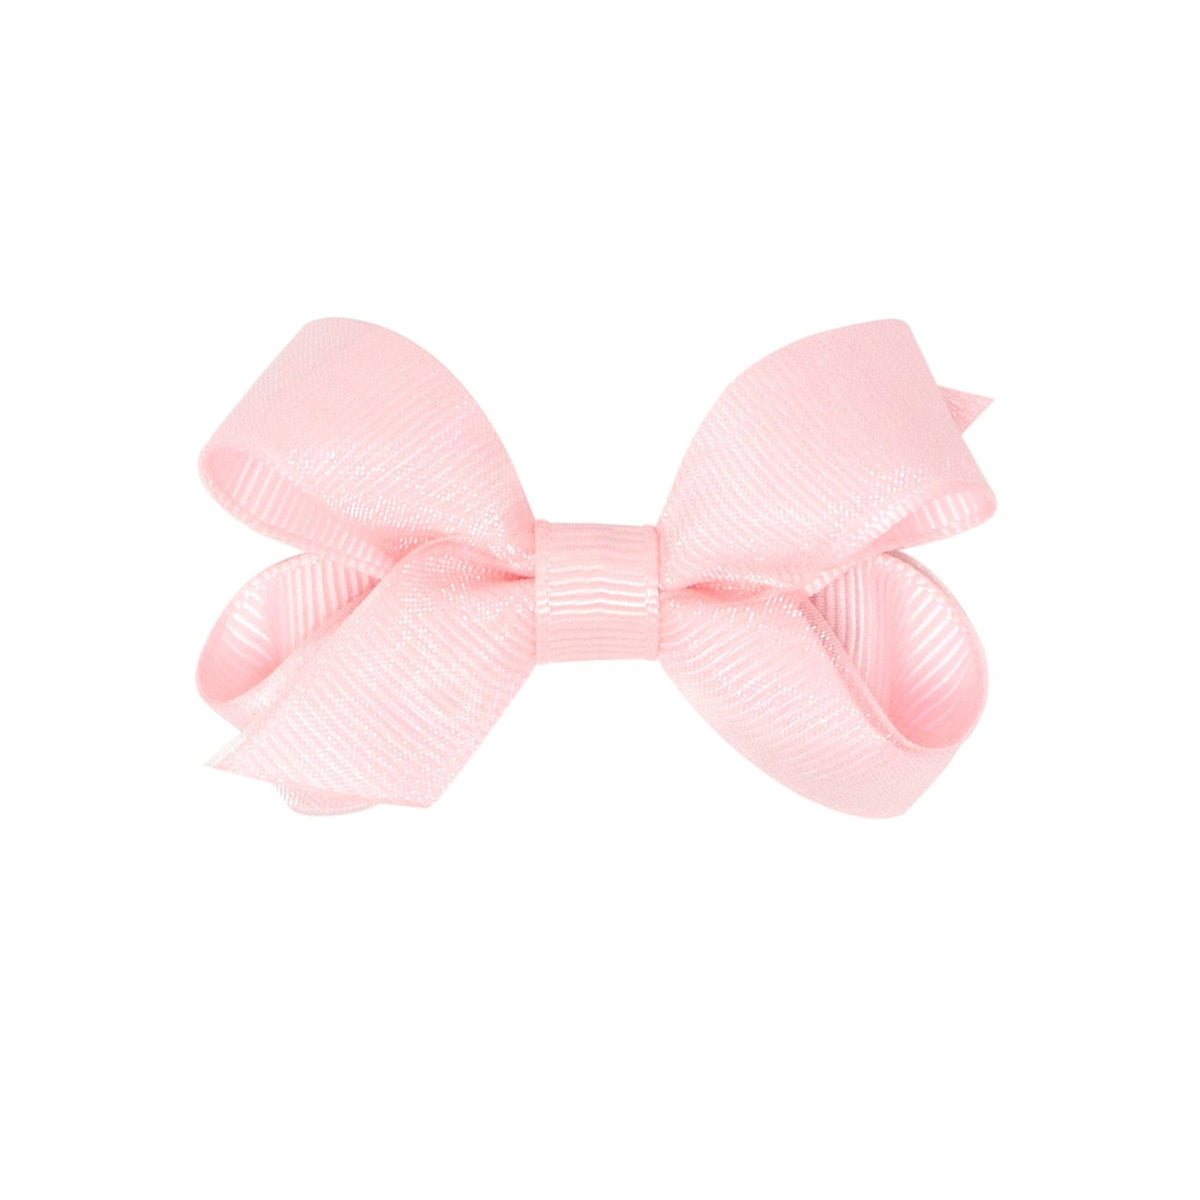 seguridadindustrialcr medium grosgrain hair bow in light pink 